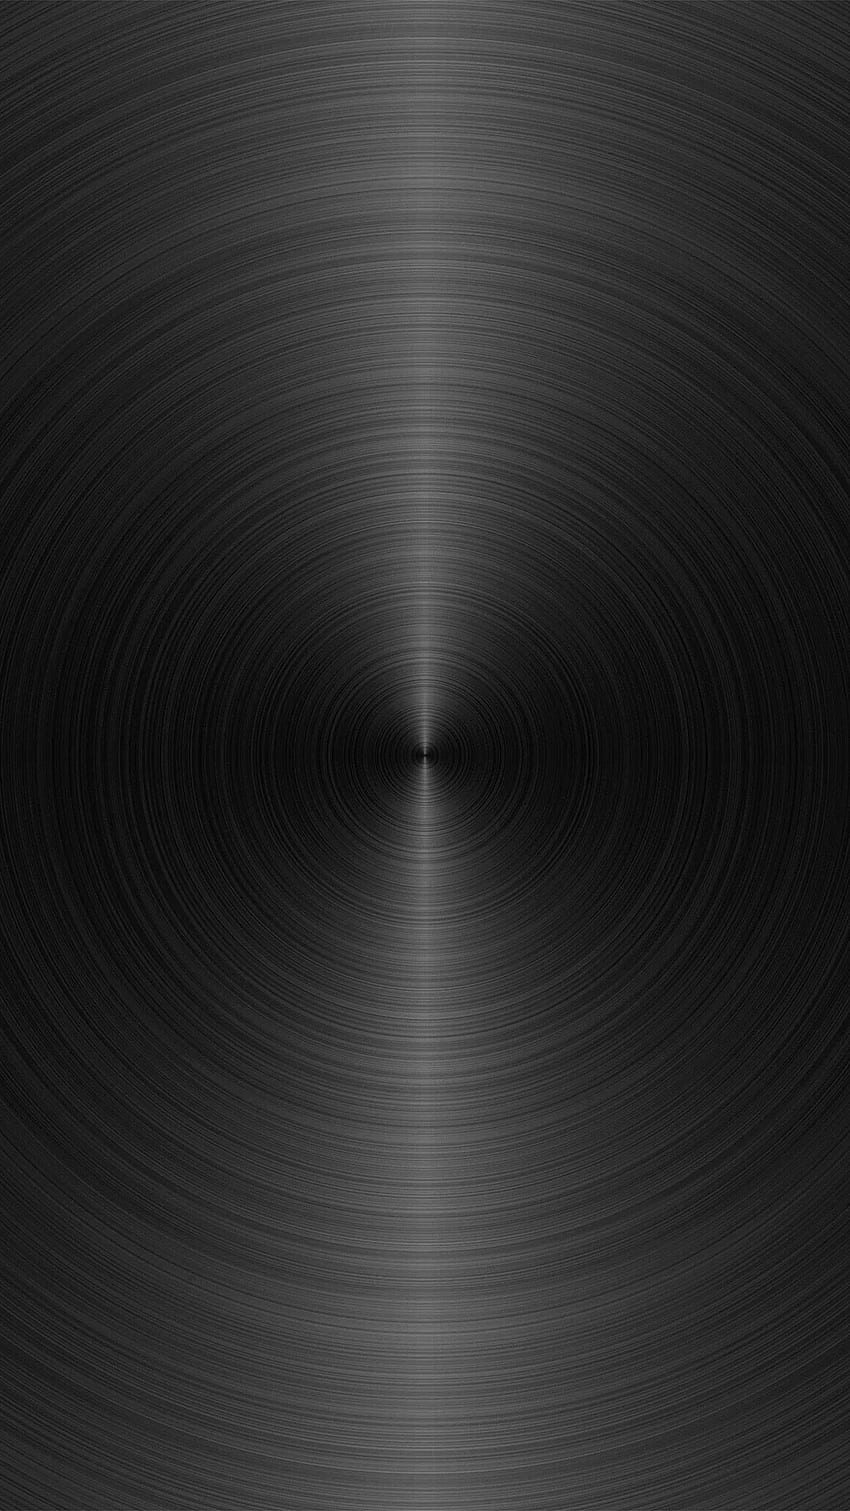 Patrón de textura redonda de círculo de metal gris oscuro, círculo negro fondo de pantalla del teléfono